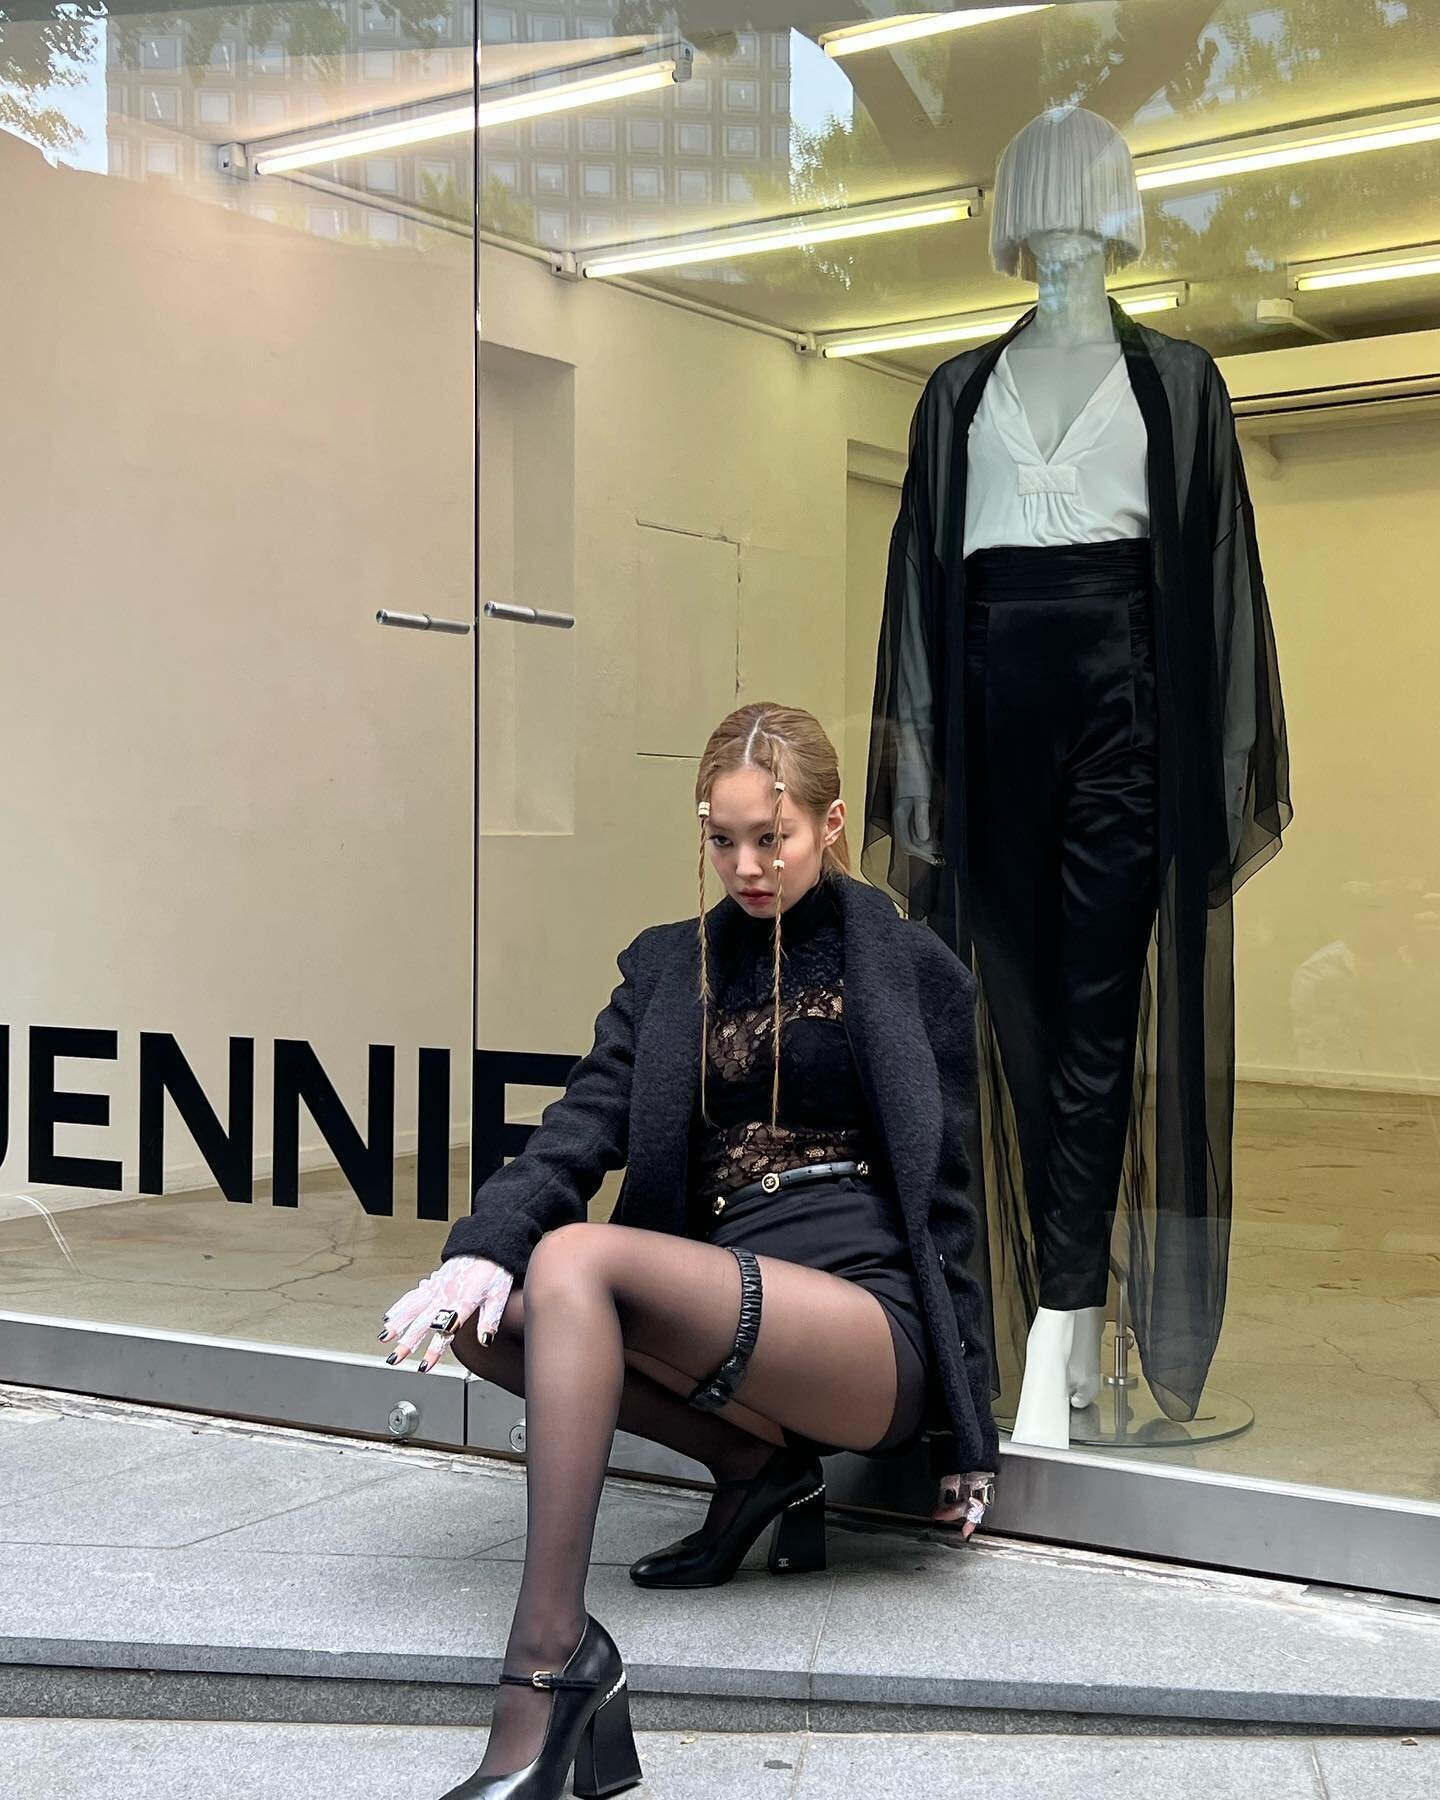 JENNIE STYLE on Instagram: “@jennierubyjane IG Update & 'How You